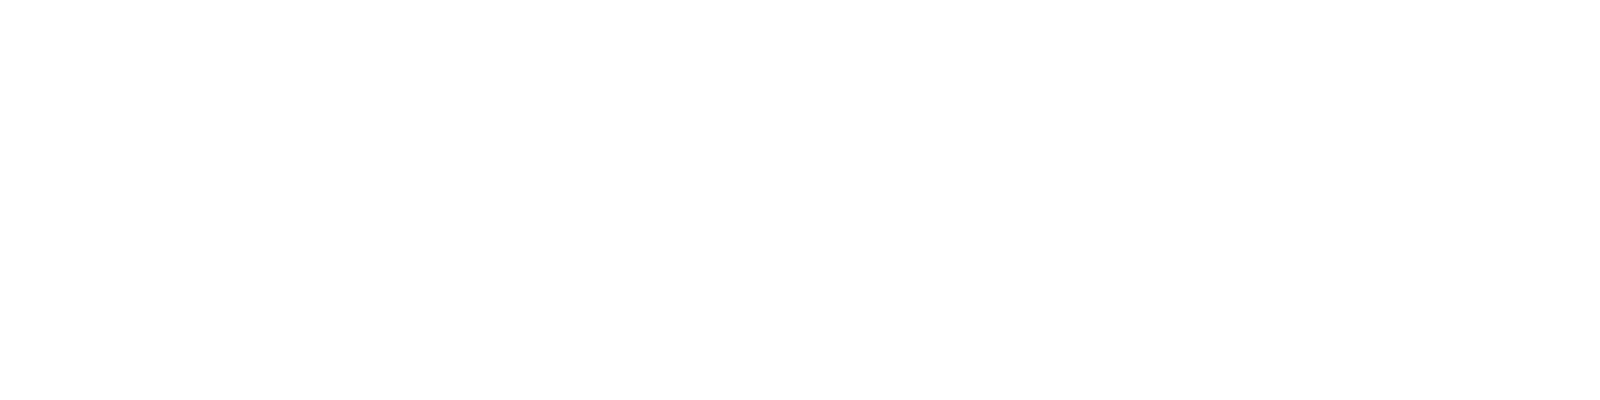 ELEMENT Insurance AG logo